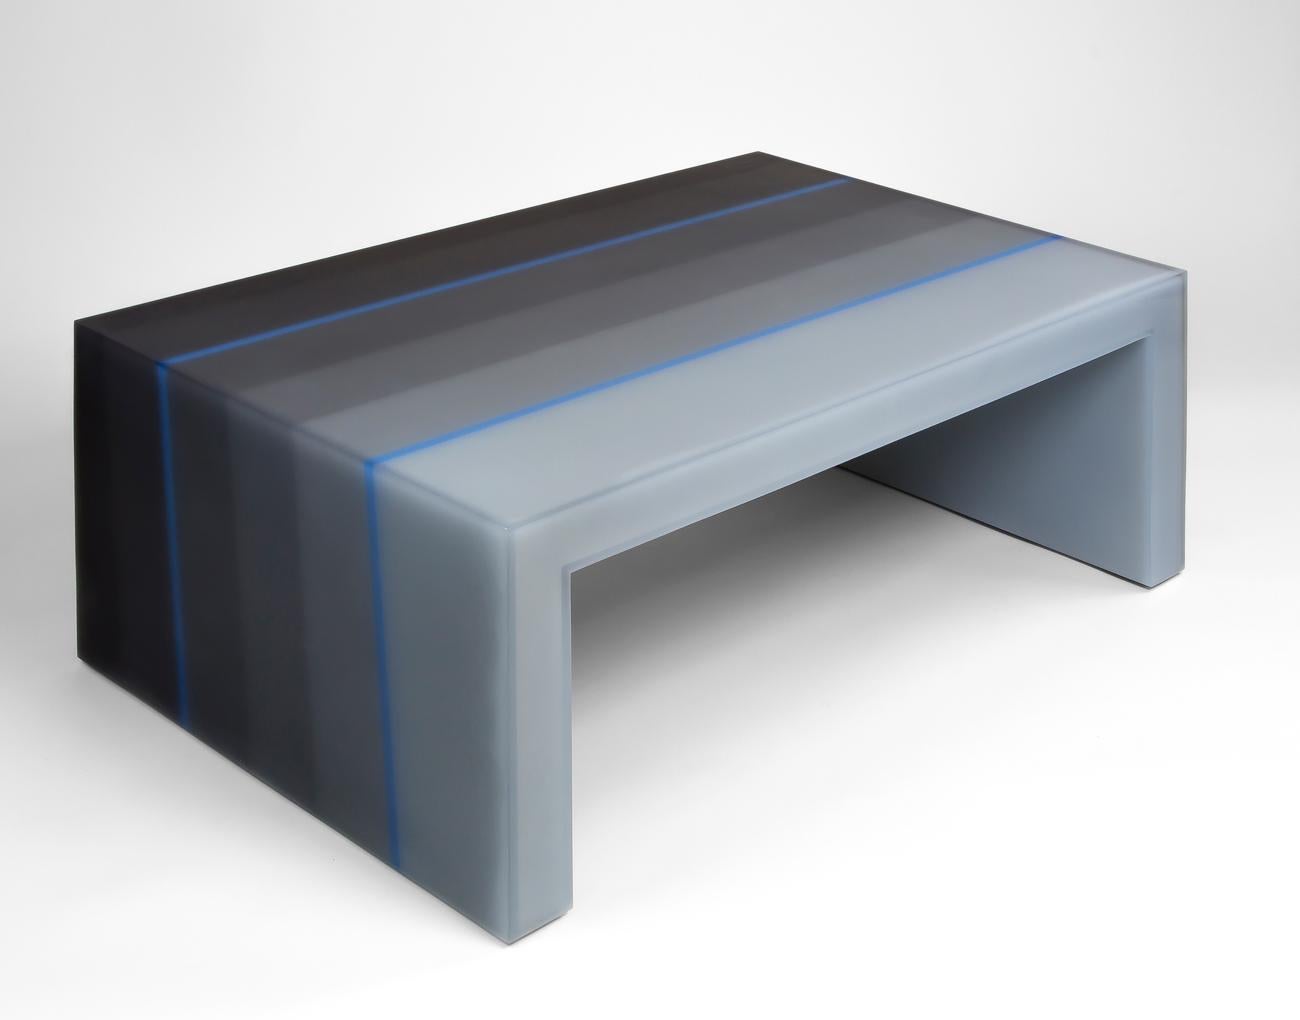 Cette table basse en résine, infusée de nuances apaisantes de gris, est méticuleusement fabriquée en six sections parallèles par le designer de meubles Facture Studio. La couleur monte progressivement d'un dégradé de clair à foncé d'une couche à